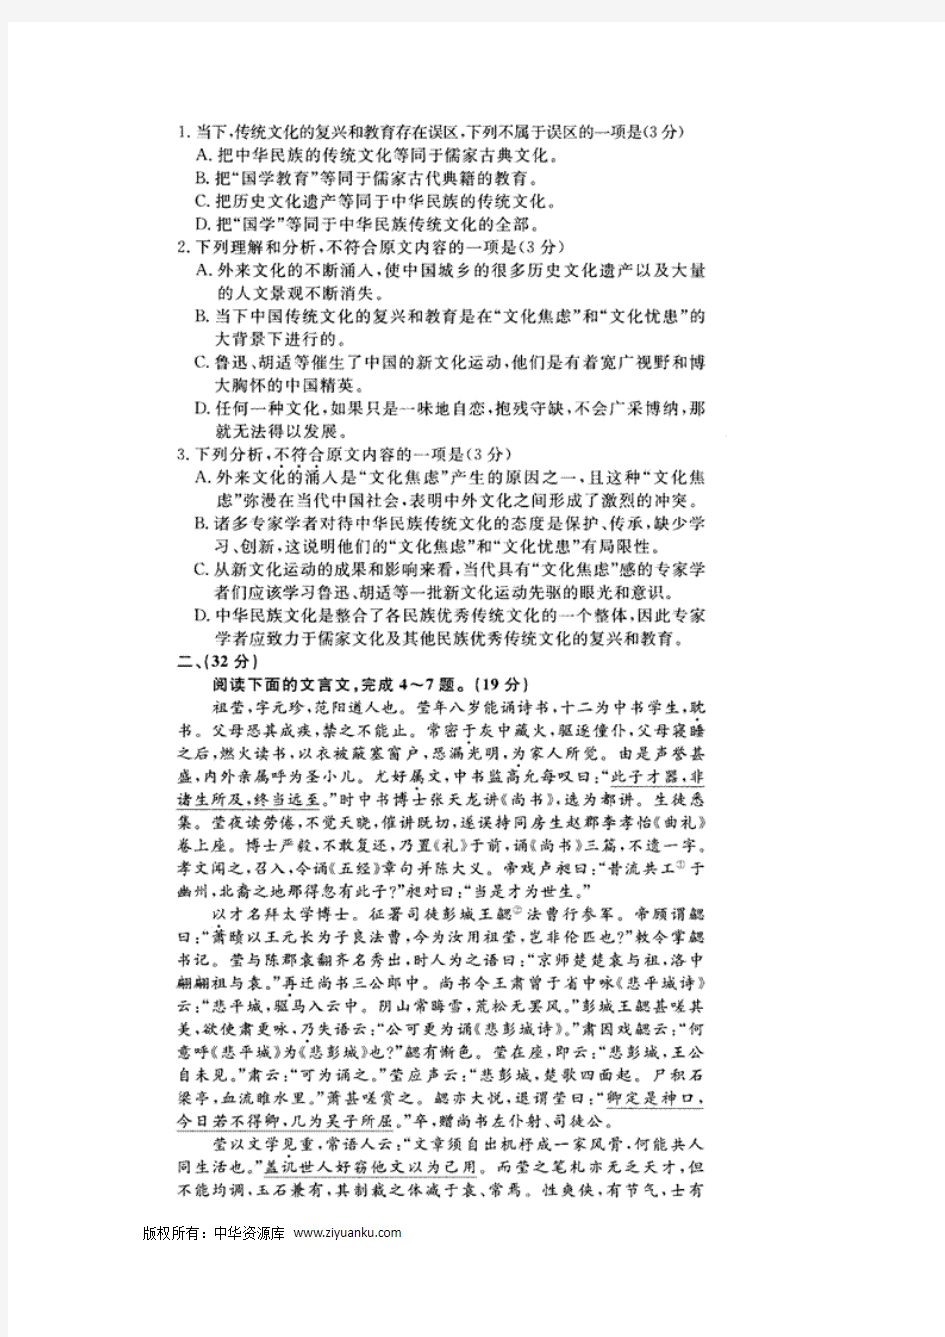 安徽省名校2012届高三高考模拟考试(一) 语文试题 图片版